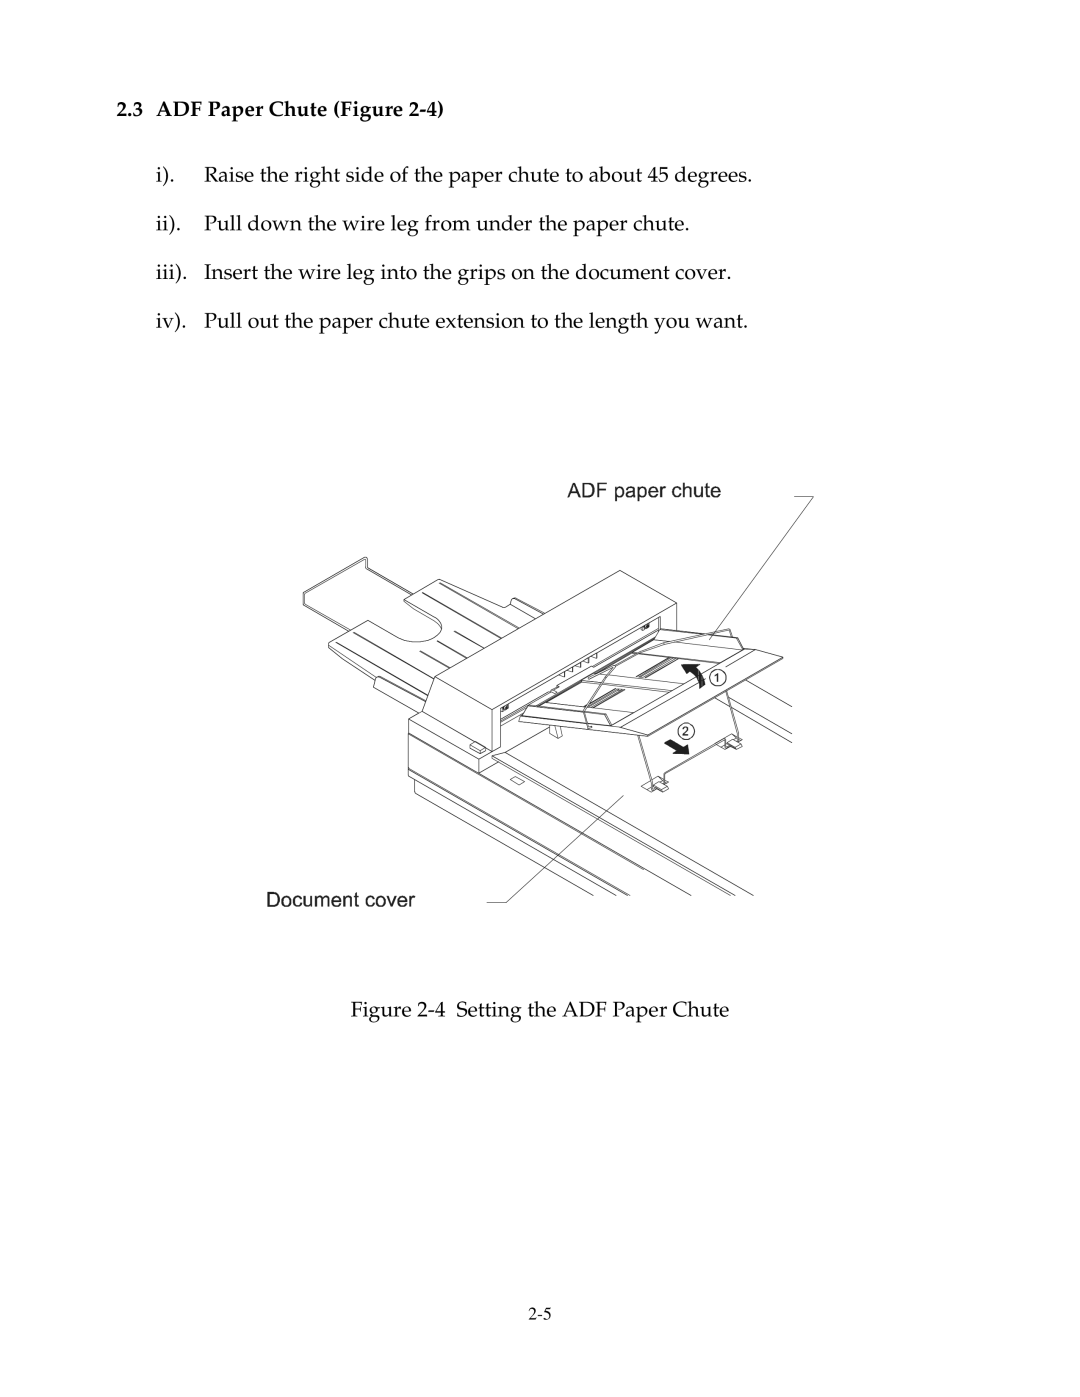 Fujitsu 15C user manual ADF Paper Chute Figure 